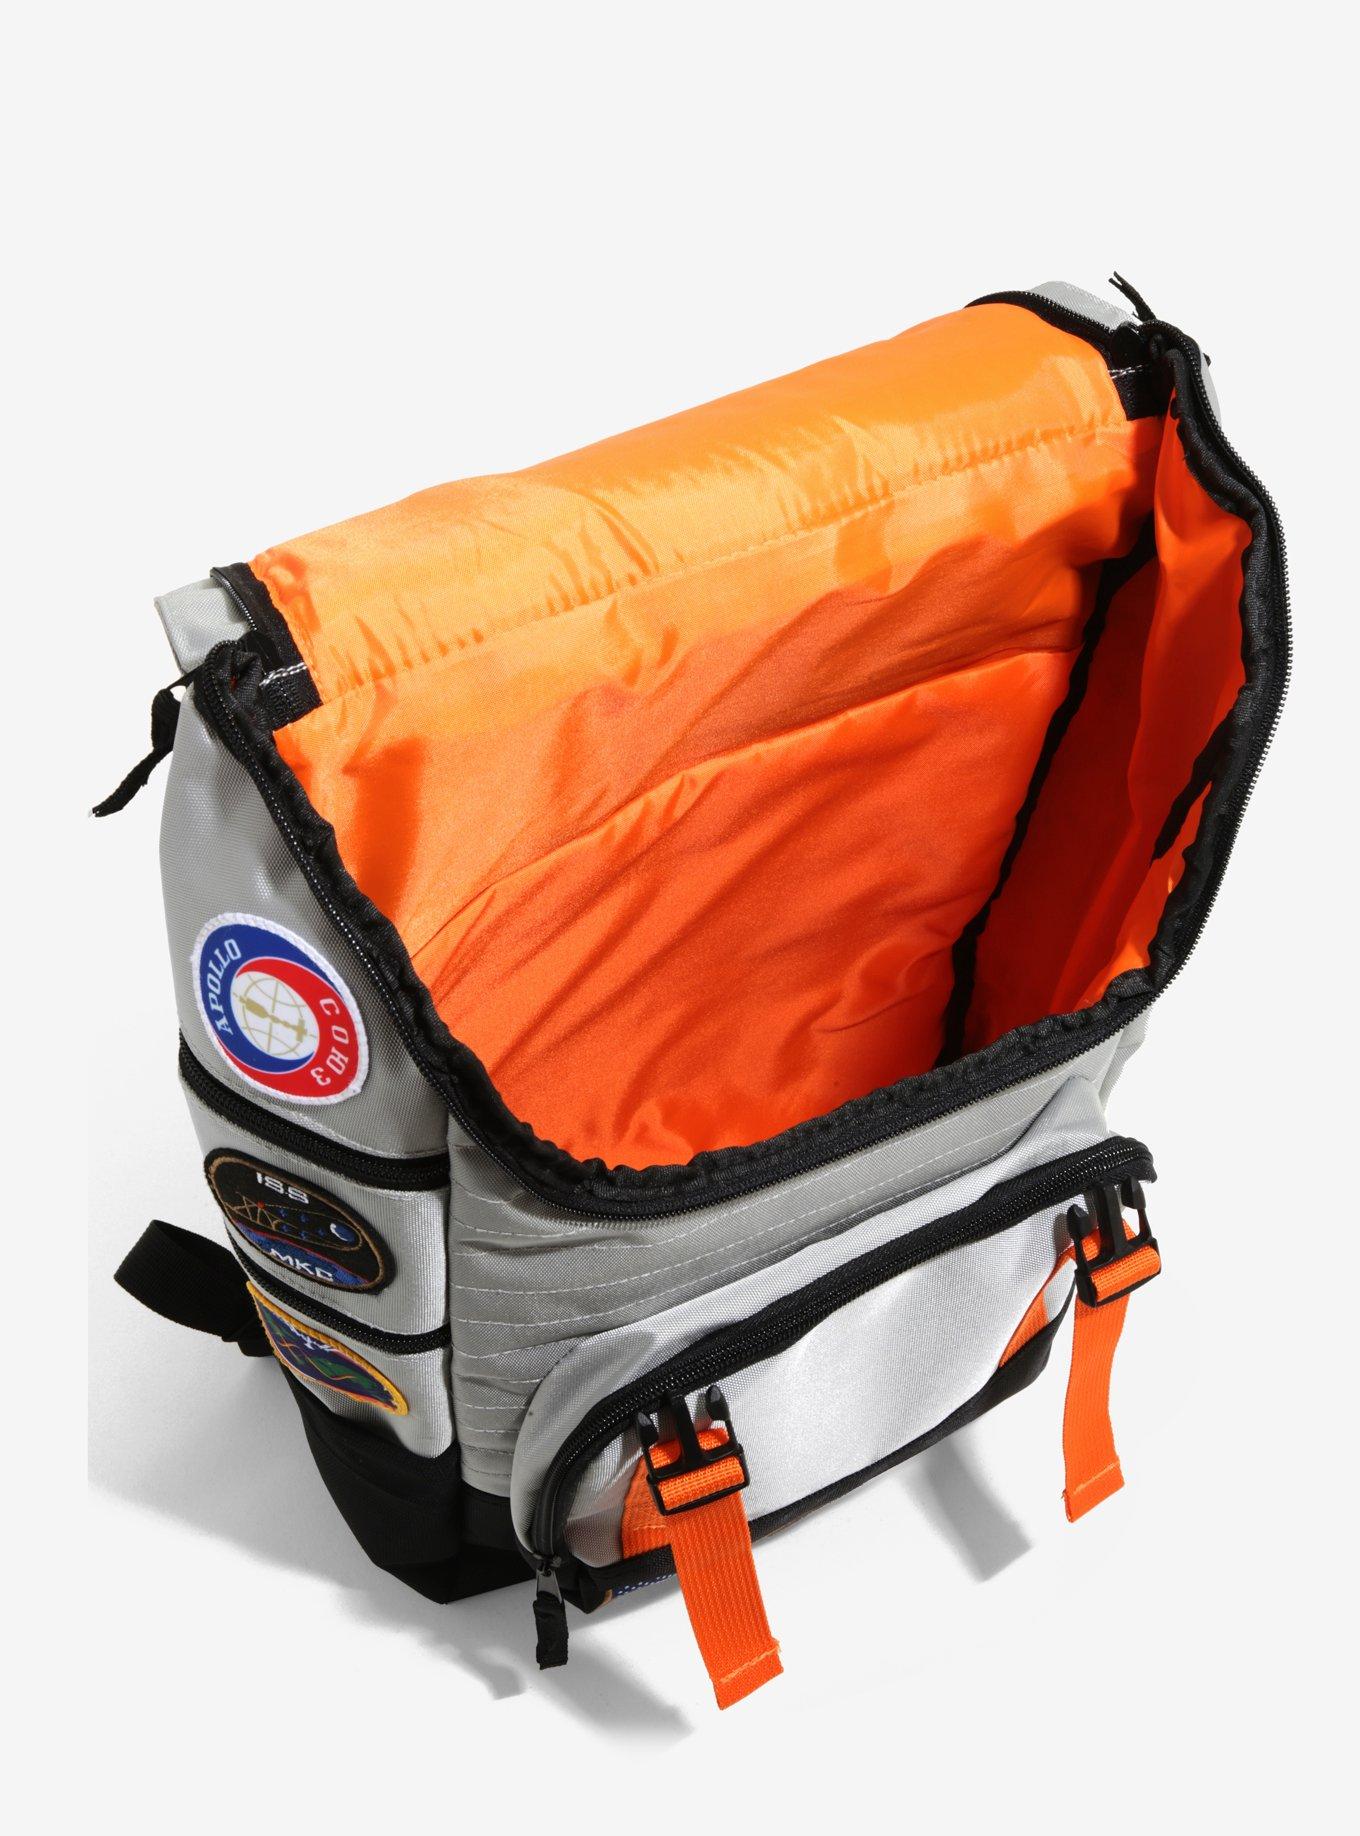 NASA Patched Flight Built-Up Backpack, , alternate